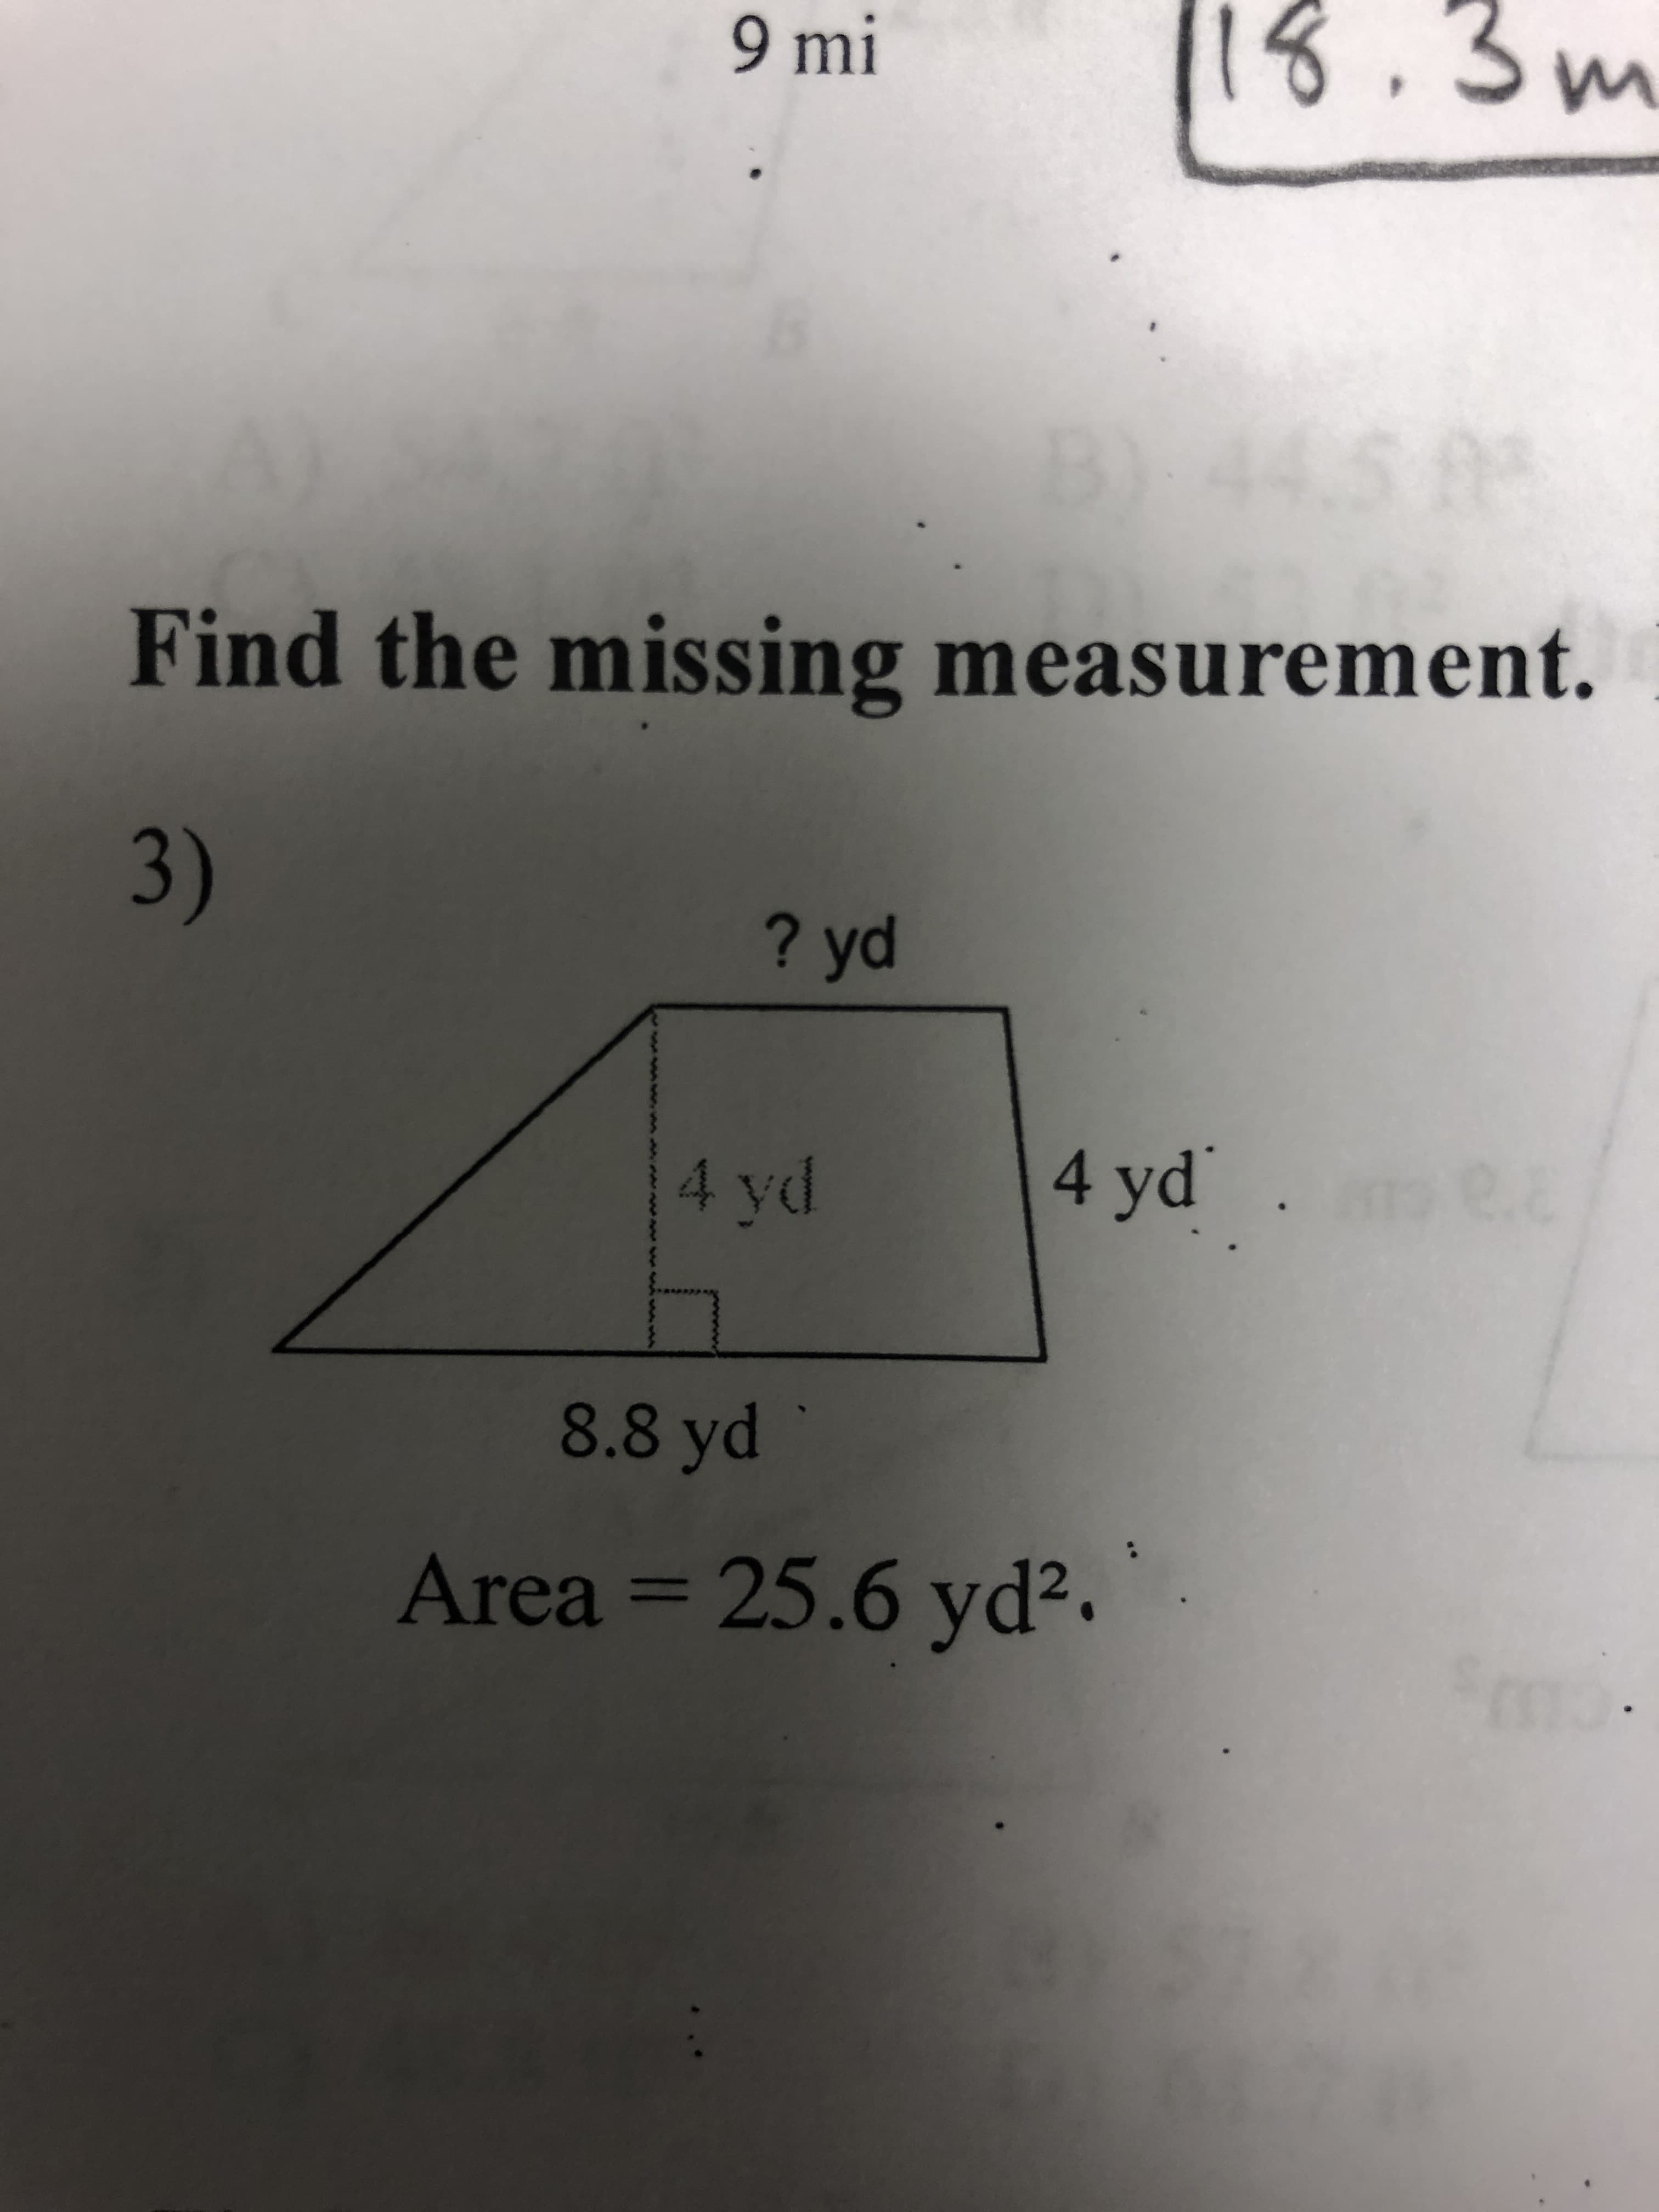 1.3
9 mi
Find the missing measurement.
3)
? yd
4 yd
8.8 yd
Area 25.6 yd2
